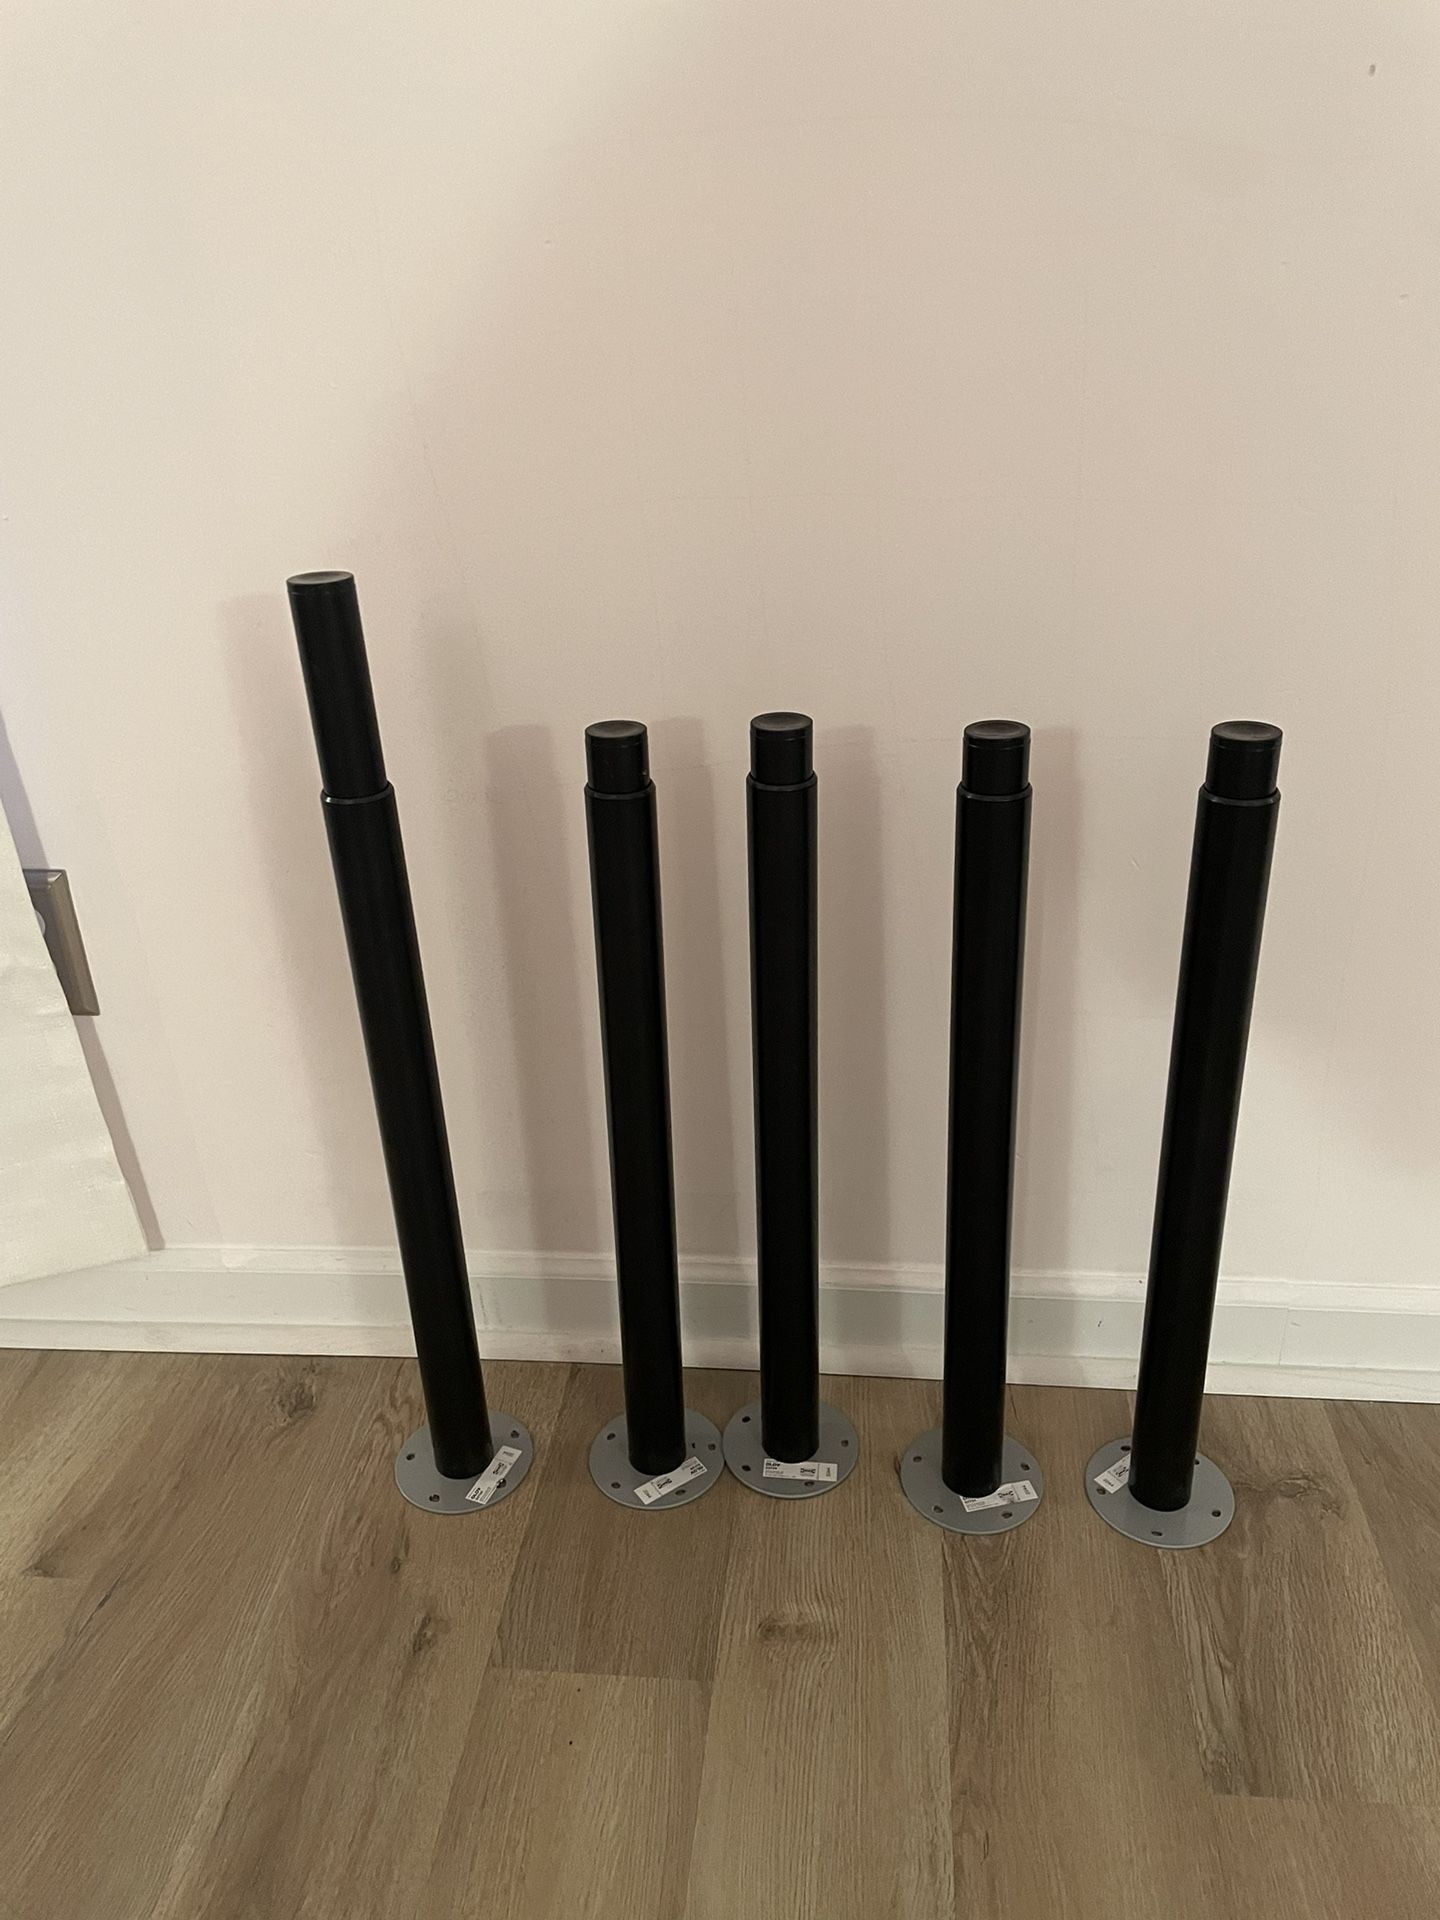 Set Of 5 Ikea OLOV Adjustable Table Legs